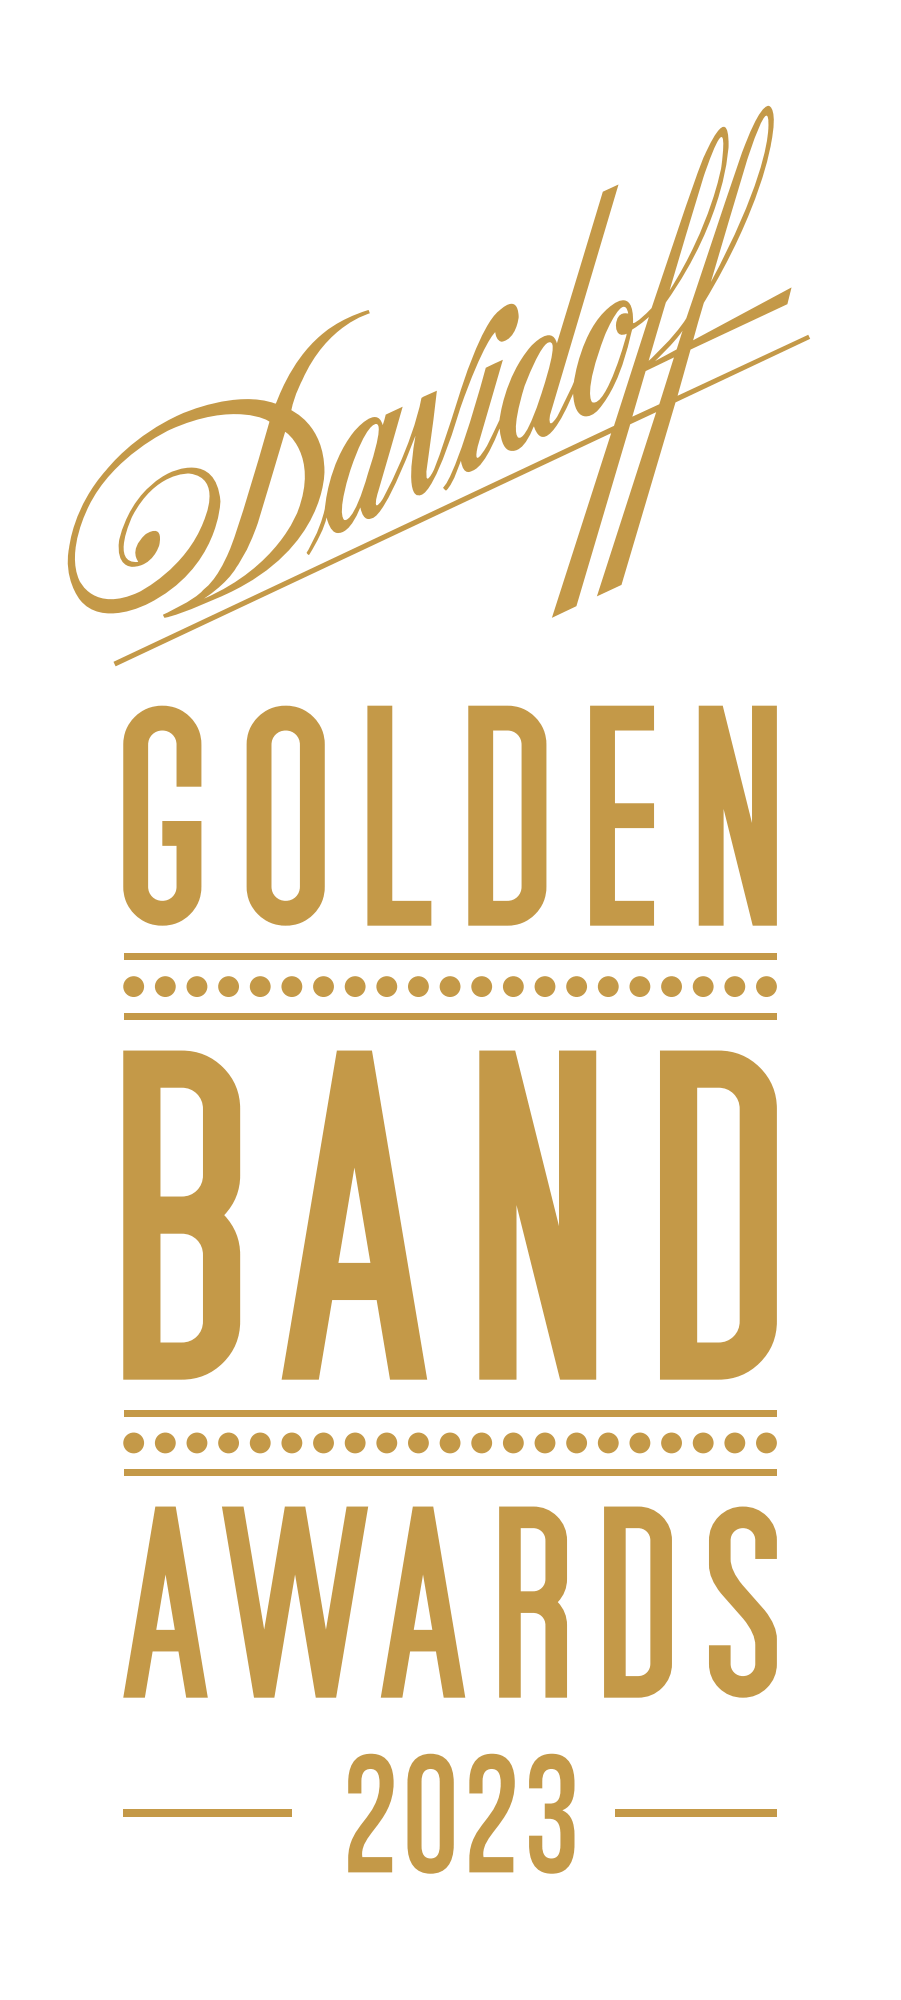 Davidoff Golden Band Award Logo